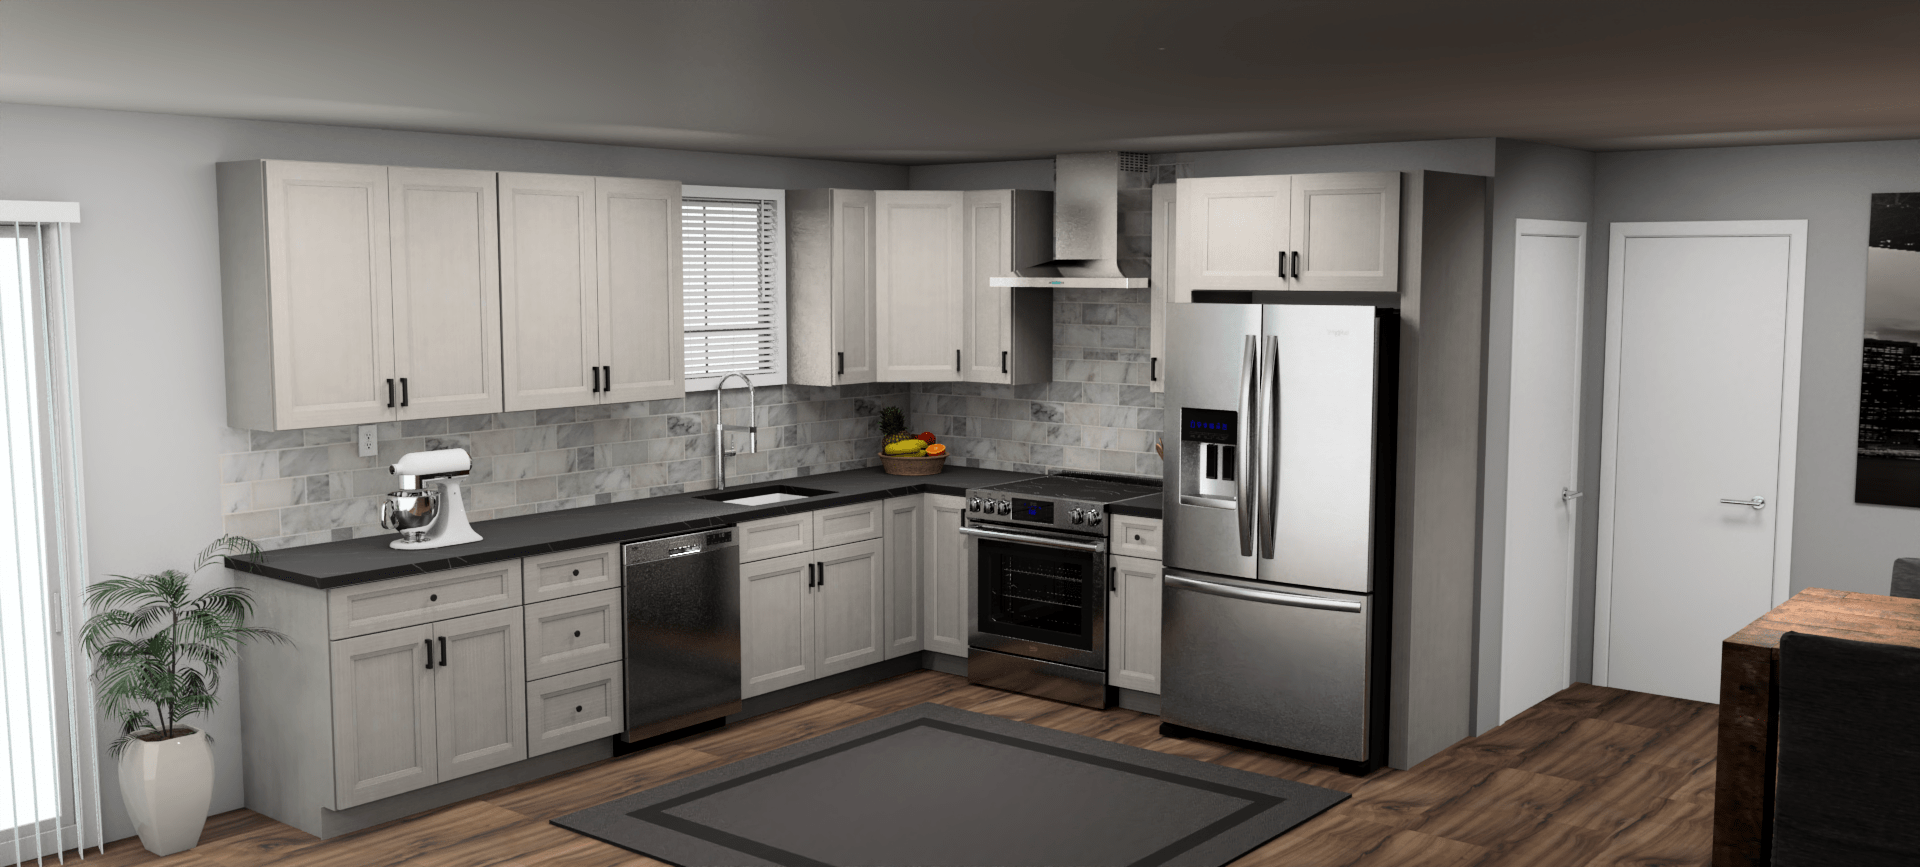 Fabuwood Allure Onyx Horizon 12 x 10 L Shaped Kitchen Main Layout Photo